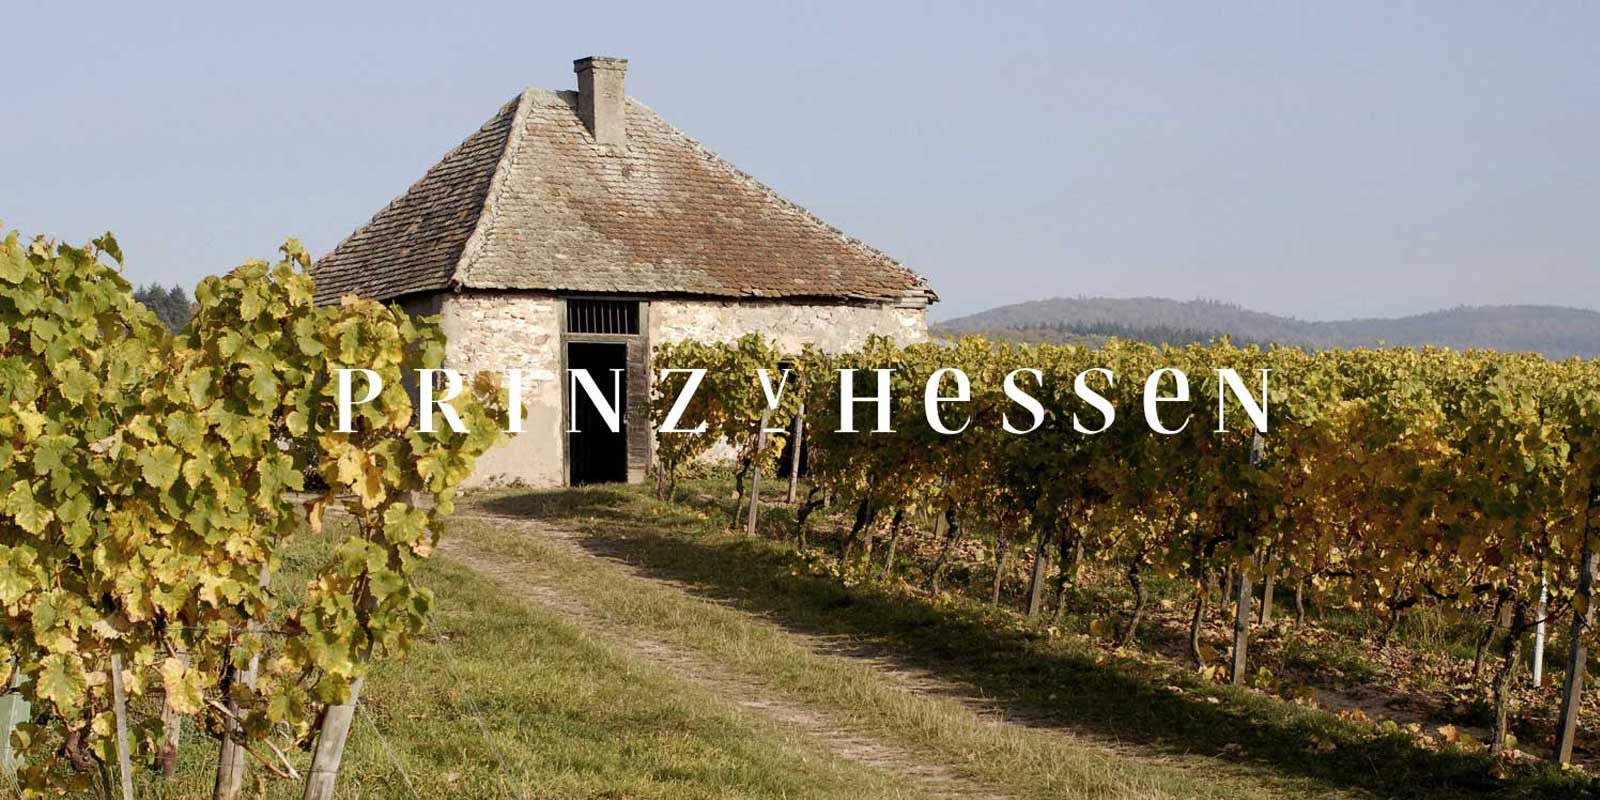 Vinicola Prince of Hesse - regiao vinicola de Rheingau A vinicola PRINZ VON HESSEN em Johannisberg, no Rheingau, e um dos principais produtores de Riesling na Alemanha e e membro fundador da VDP da associacao regional Rheingau. Numerosos reconhecimentos no pais e no exterior refletem a vinicola PRINZ VON HESSEN, que esta no mais alto nivel. Os vinhos e espumantes da vinicola PRINZ VON HESSEN ganharam diversos premios e receberam grandes premios internacionais.